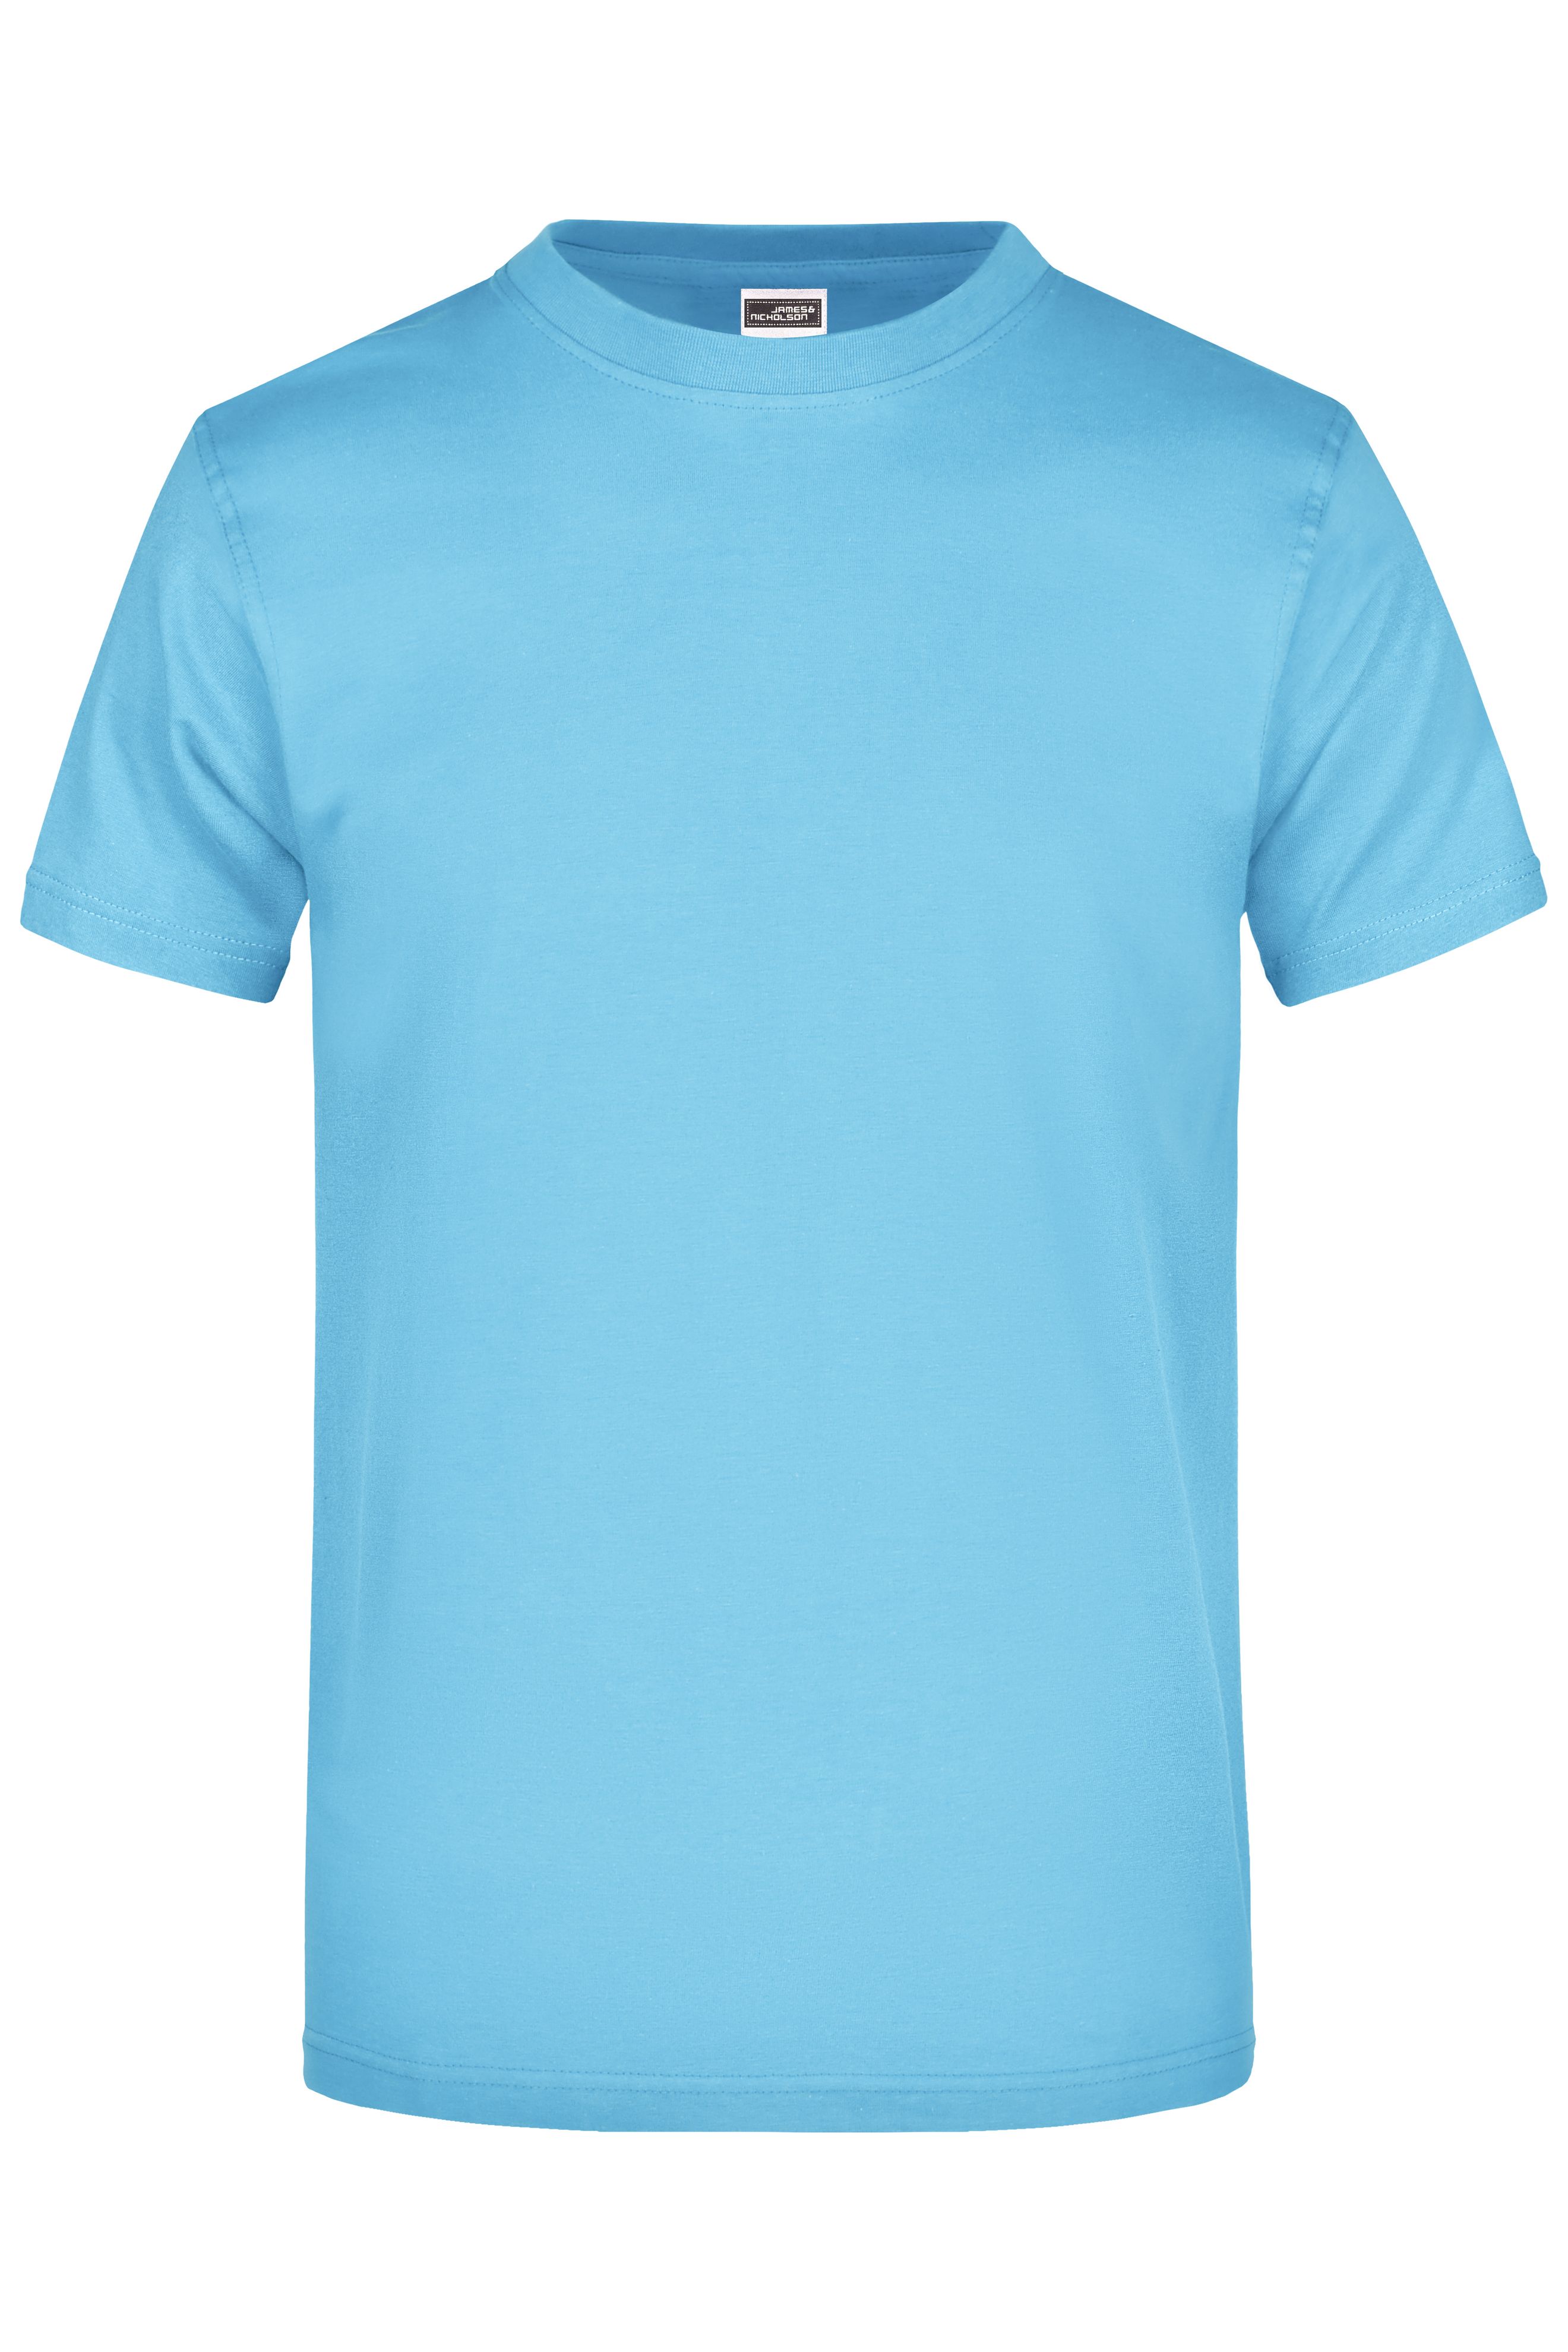 Unisexe Tee-shirt 180 g/m² homme Bleu-ciel-Daiber